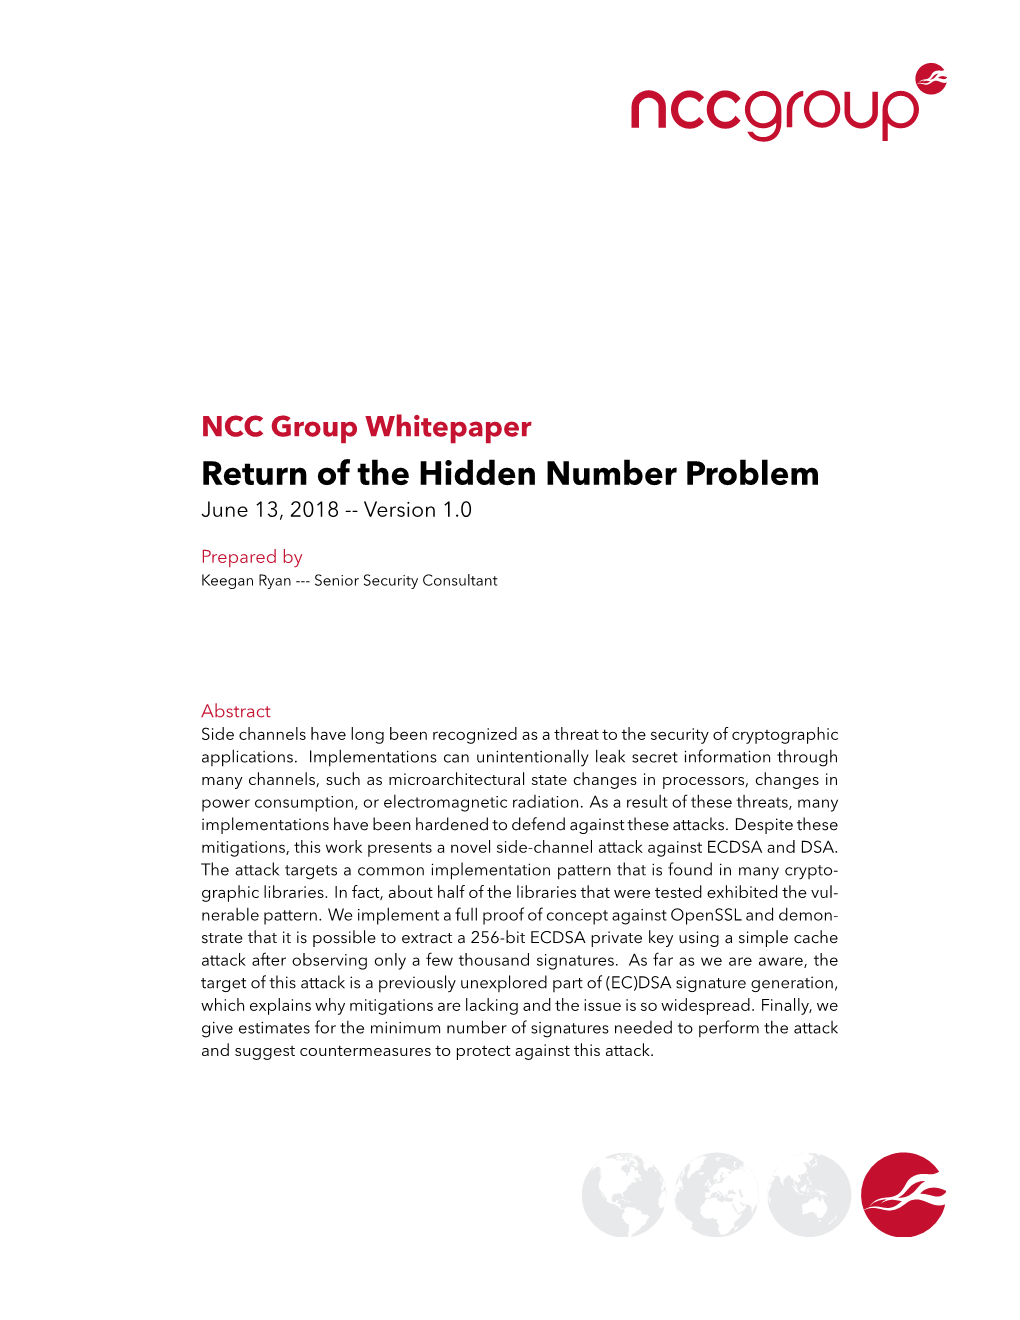 Return of the Hidden Number Problem June 13, 2018 -- Version 1.0